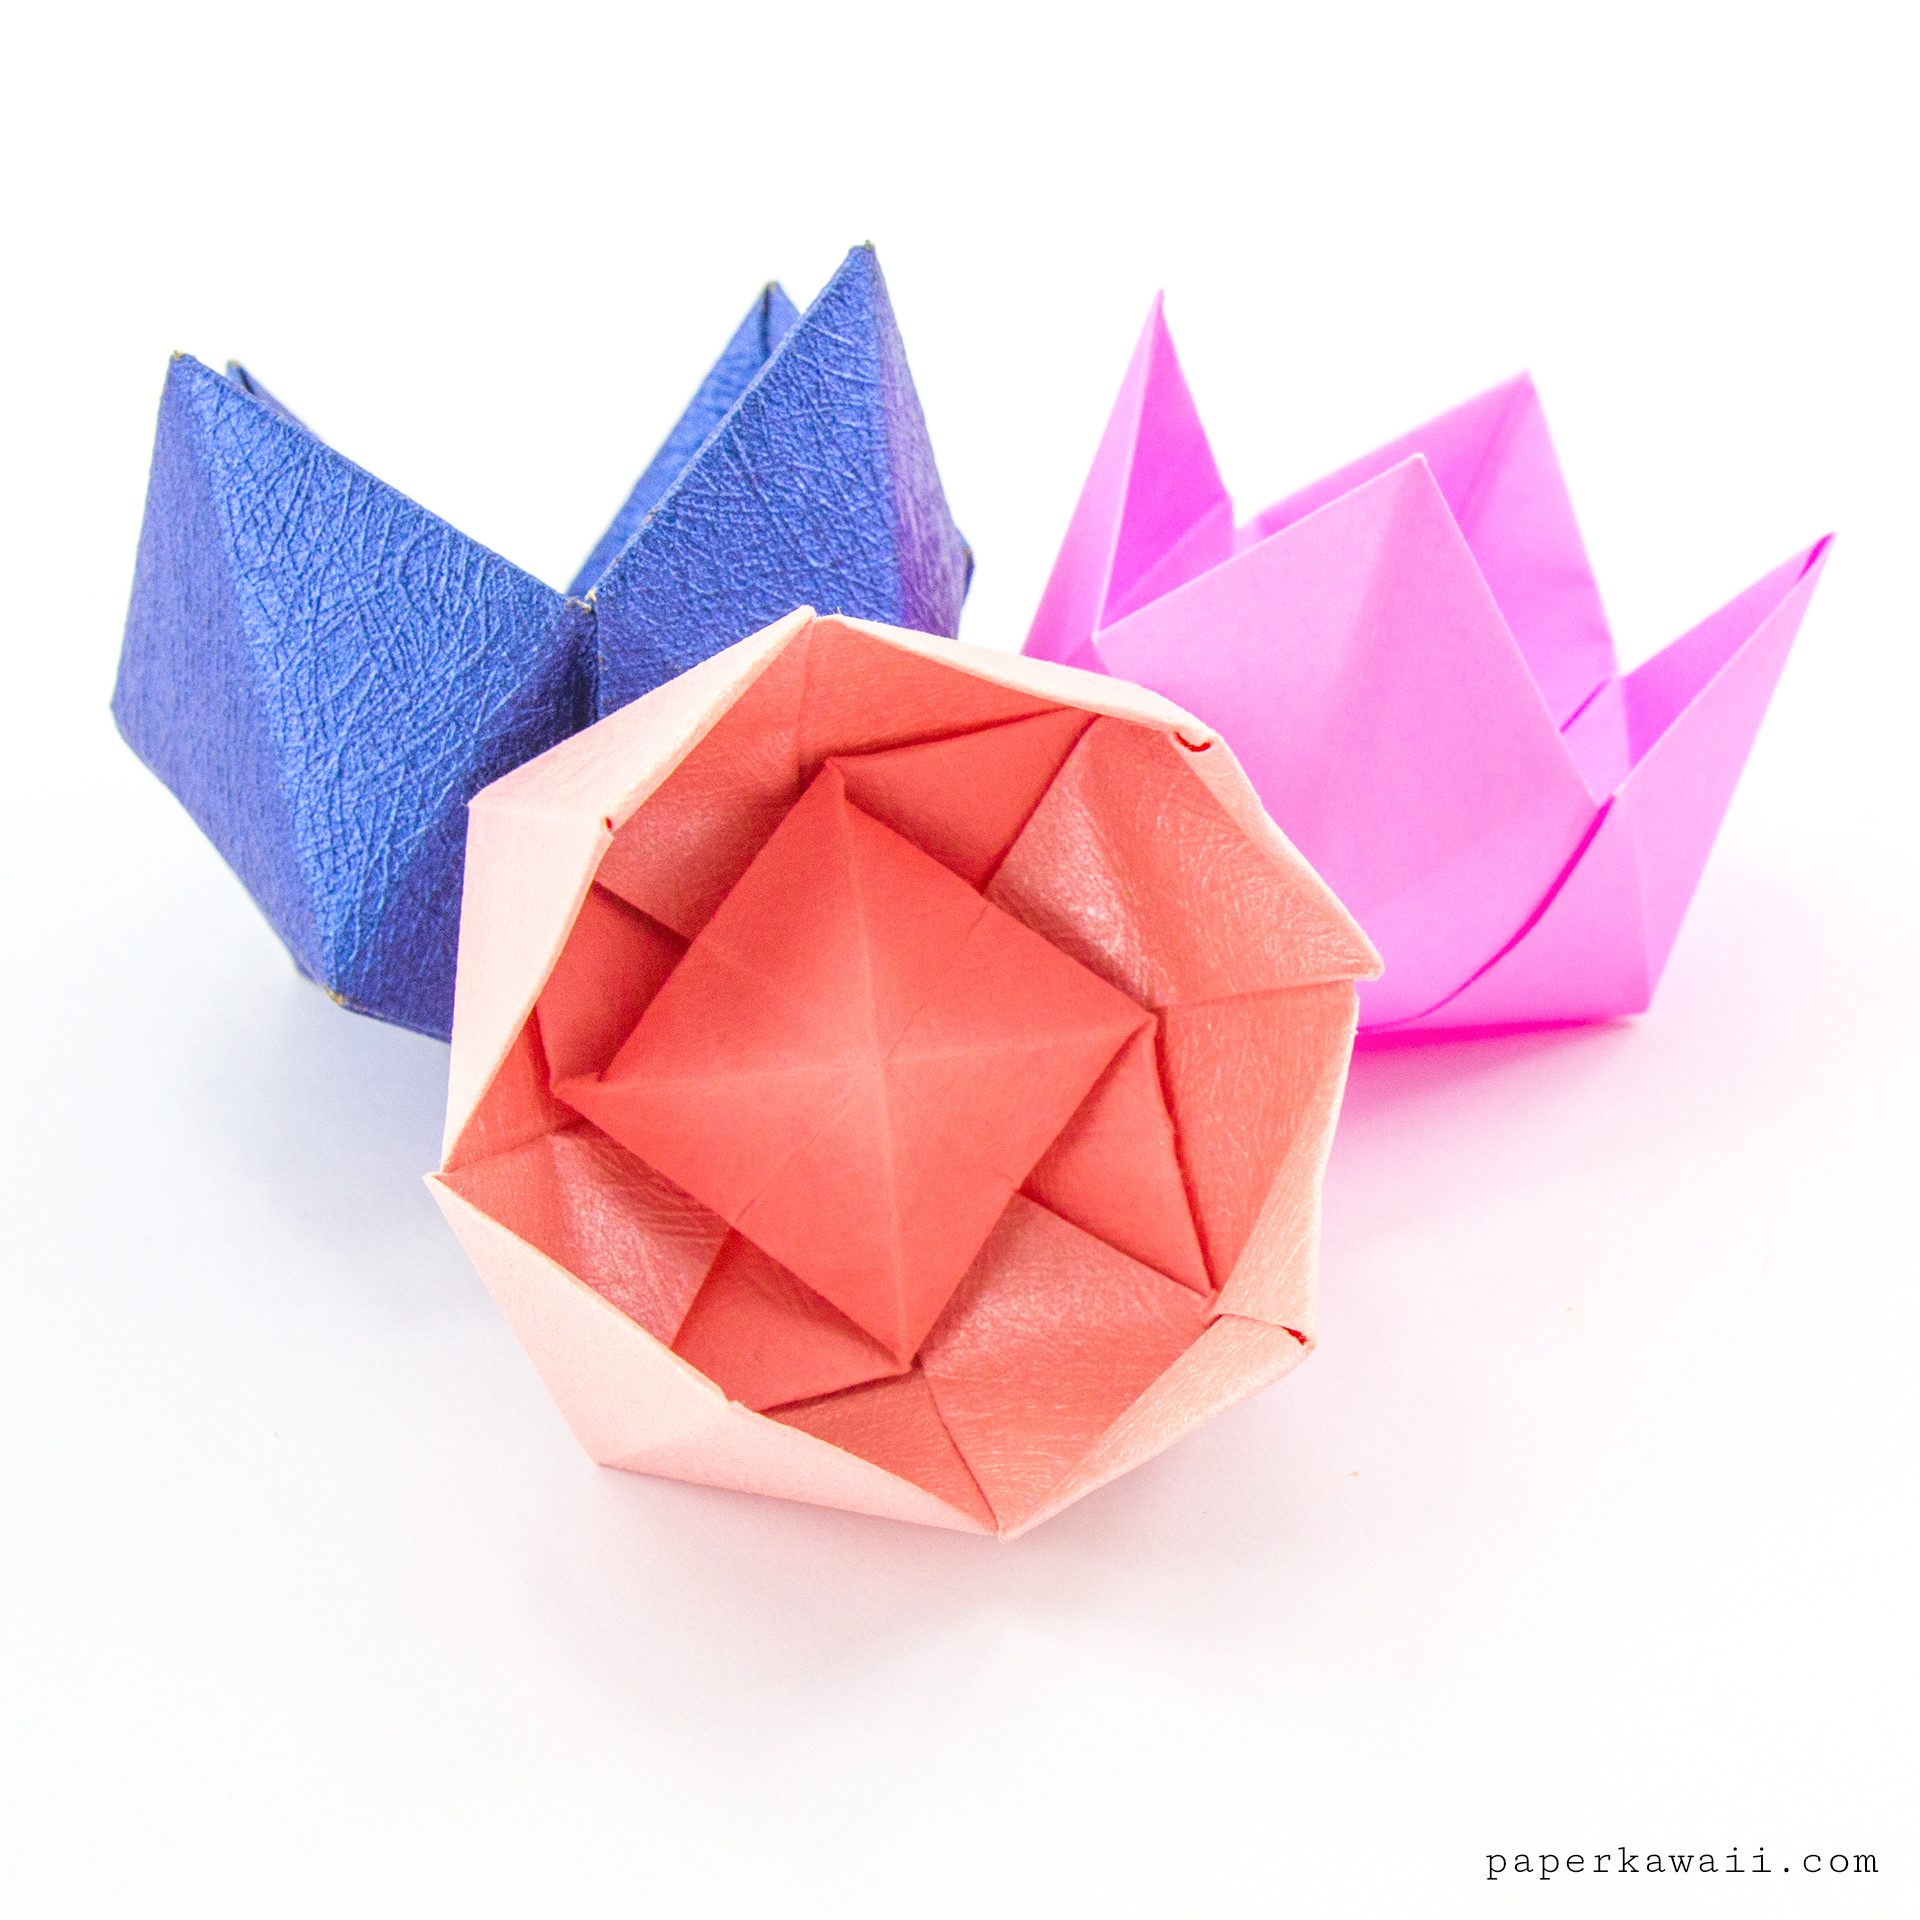 Flower Origami Kit, Easy Instructions